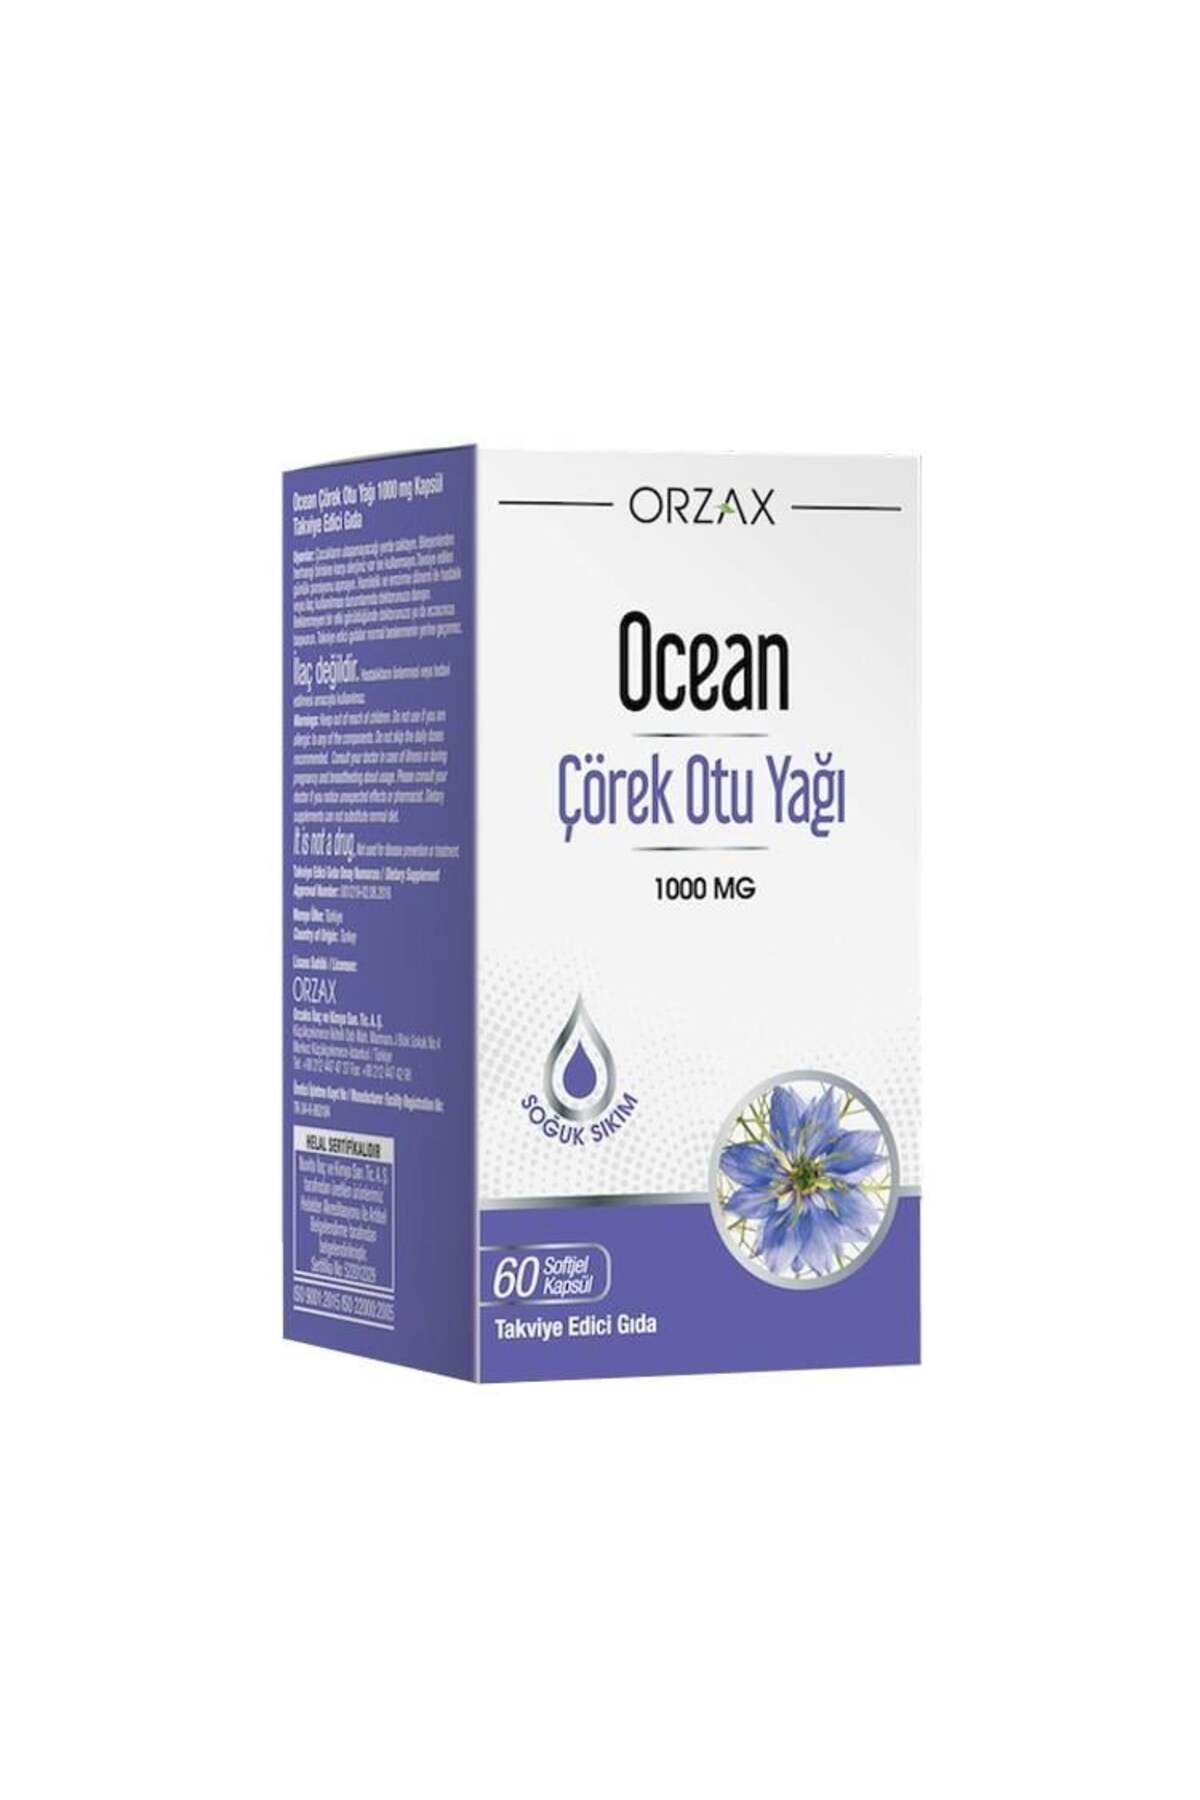 Ocean Orzax Ocean Çörek Otu Yağı 1000 mg 60 Kapsül Çörek Otu Yağı İçeren Takviye Edici Gıda..orzx